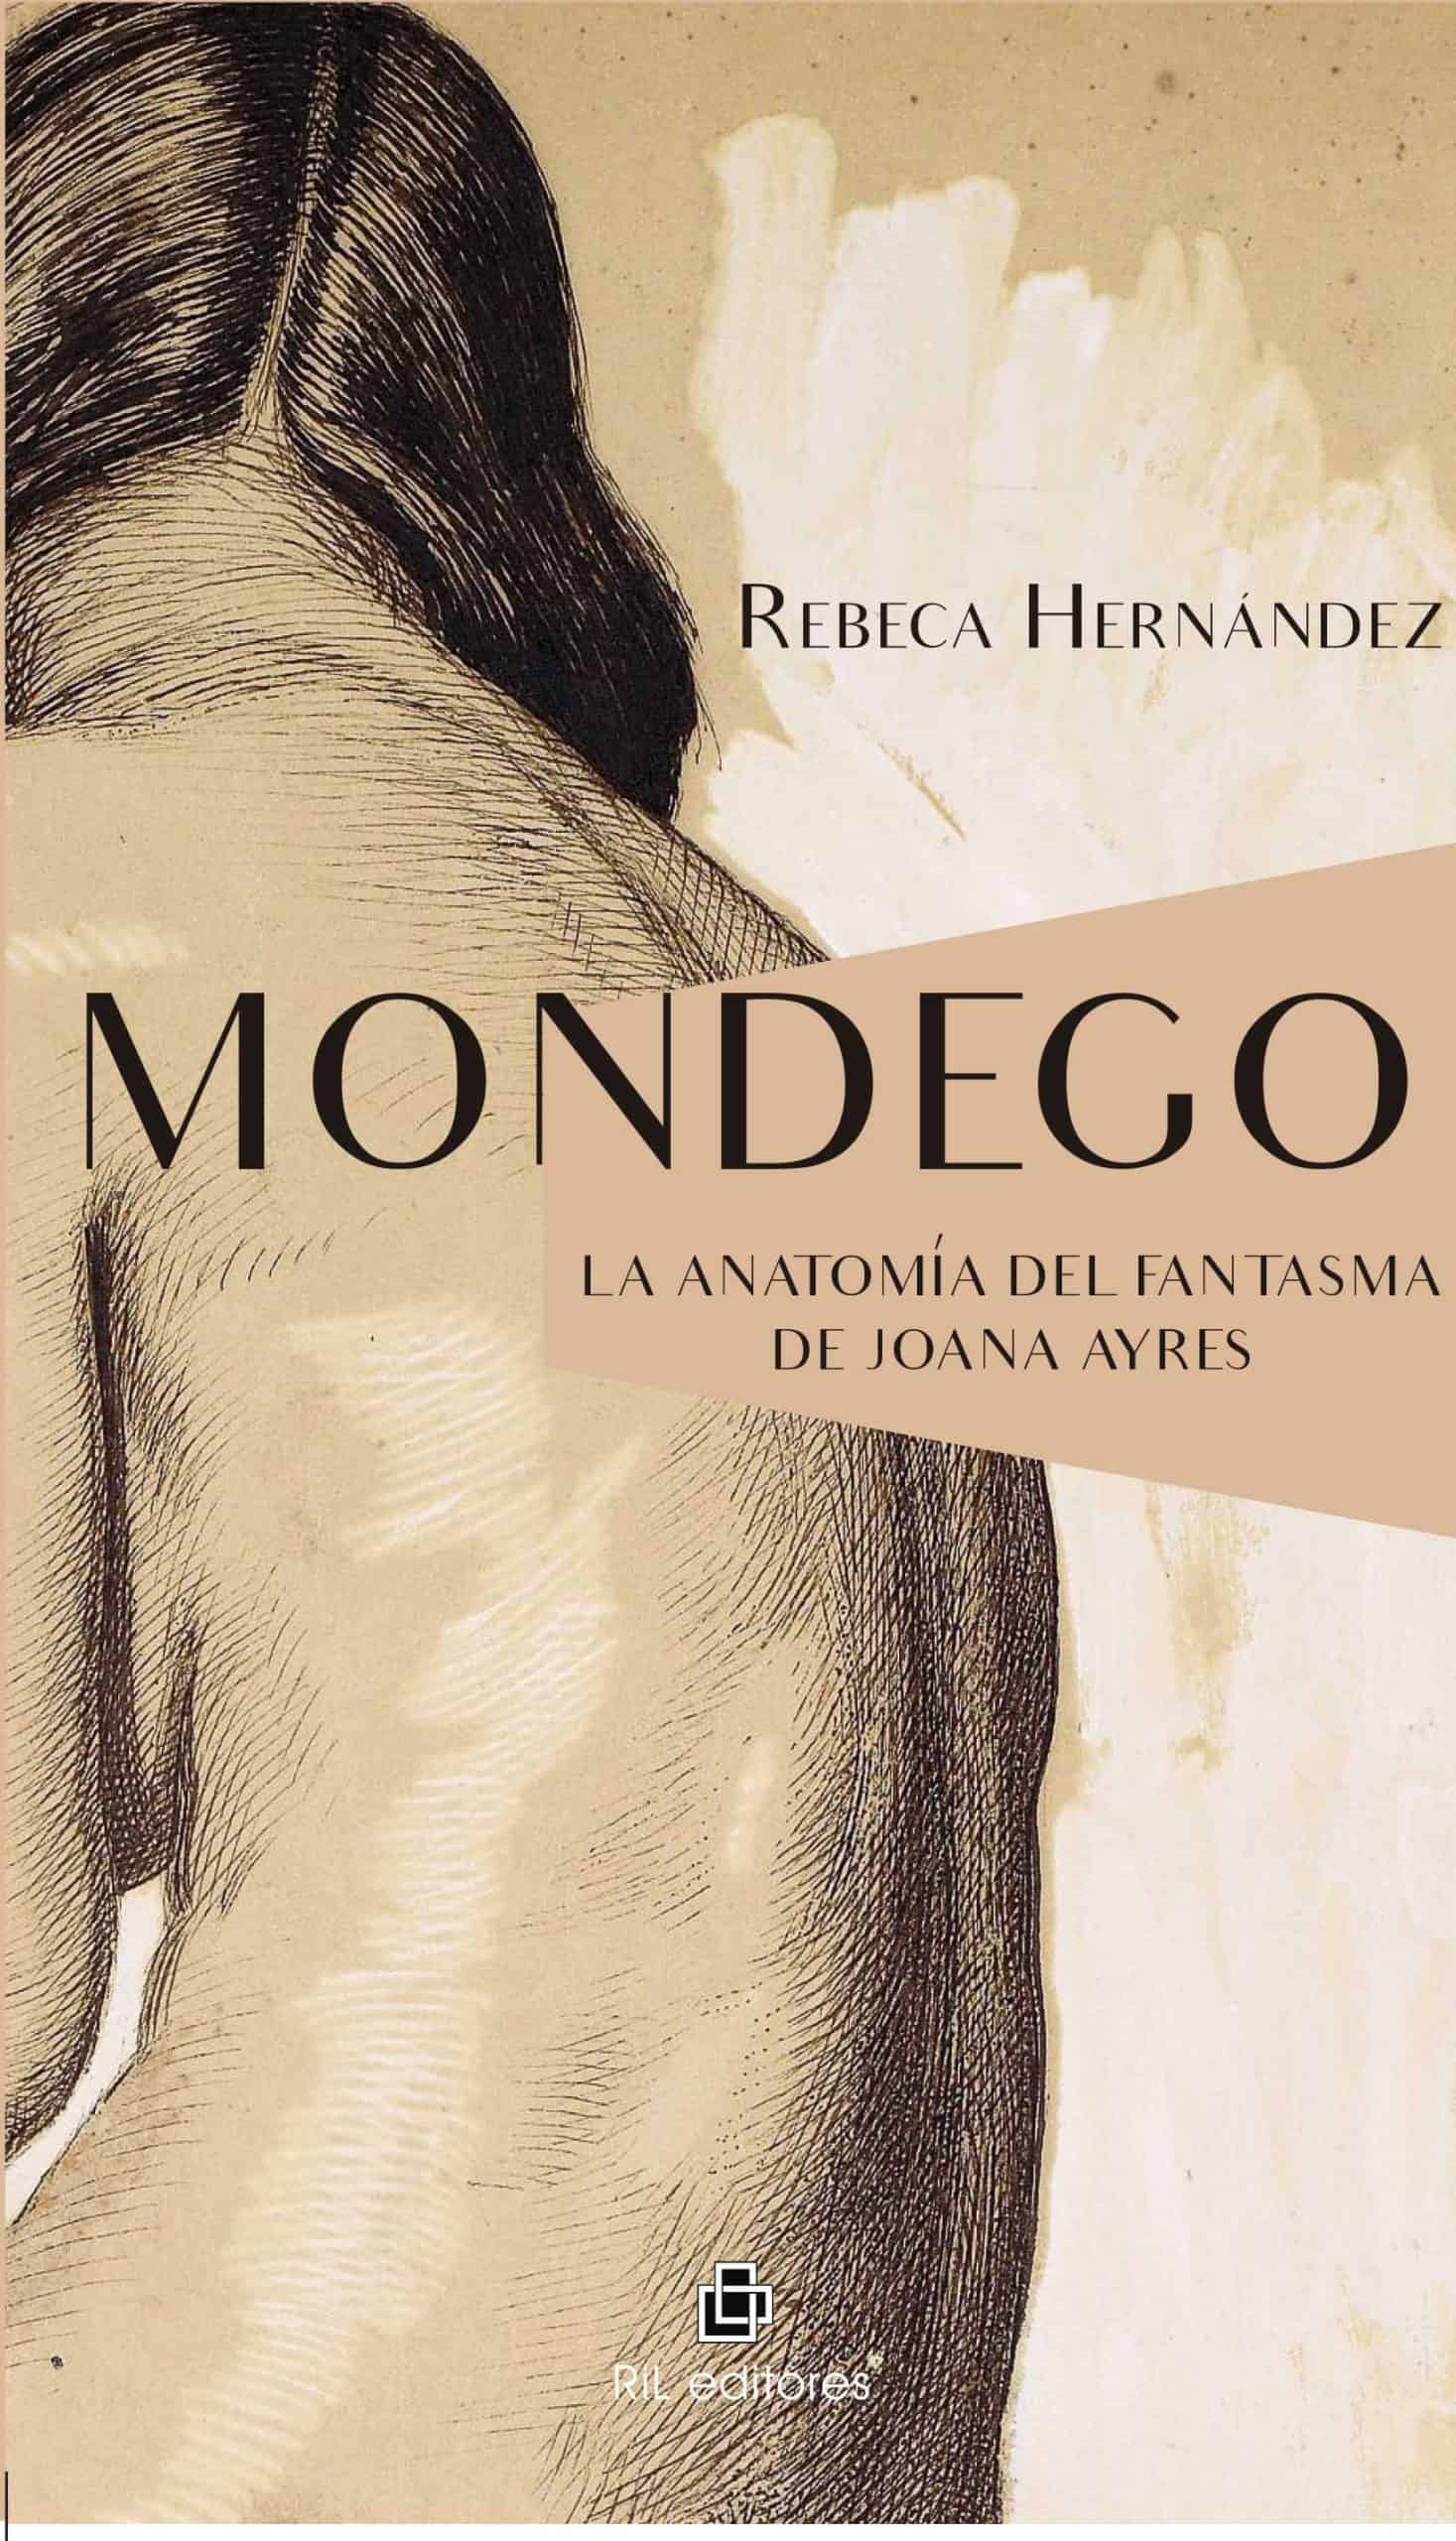 Mondego. La anatomia del fantasma de Joana Ayres 1